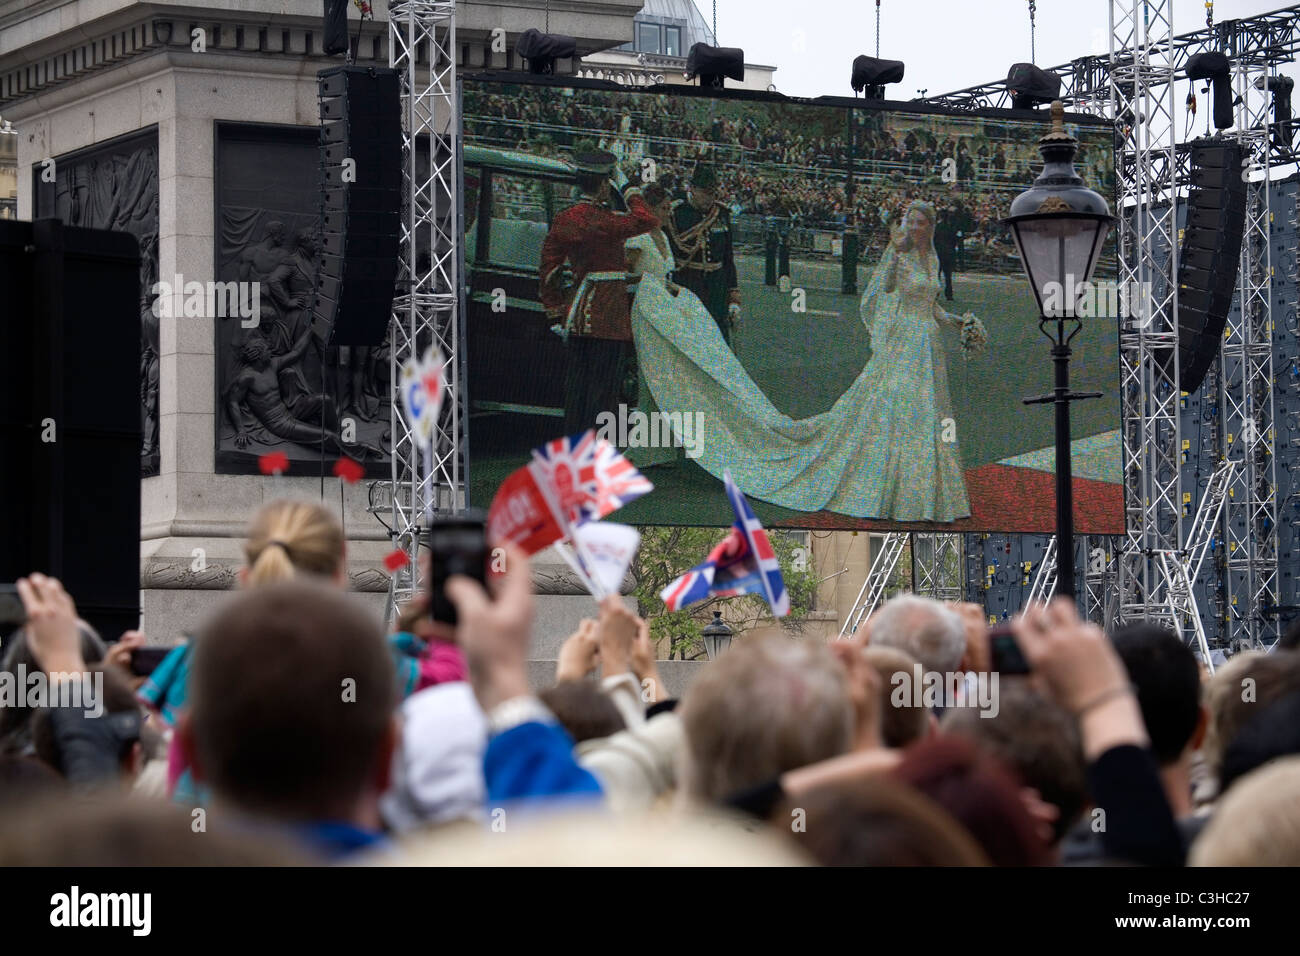 Des milliers de personnes après le mariage royal à l'écran à Trafalgar Square, Londres, Angleterre, Grande-Bretagne, Royaume-Uni Banque D'Images